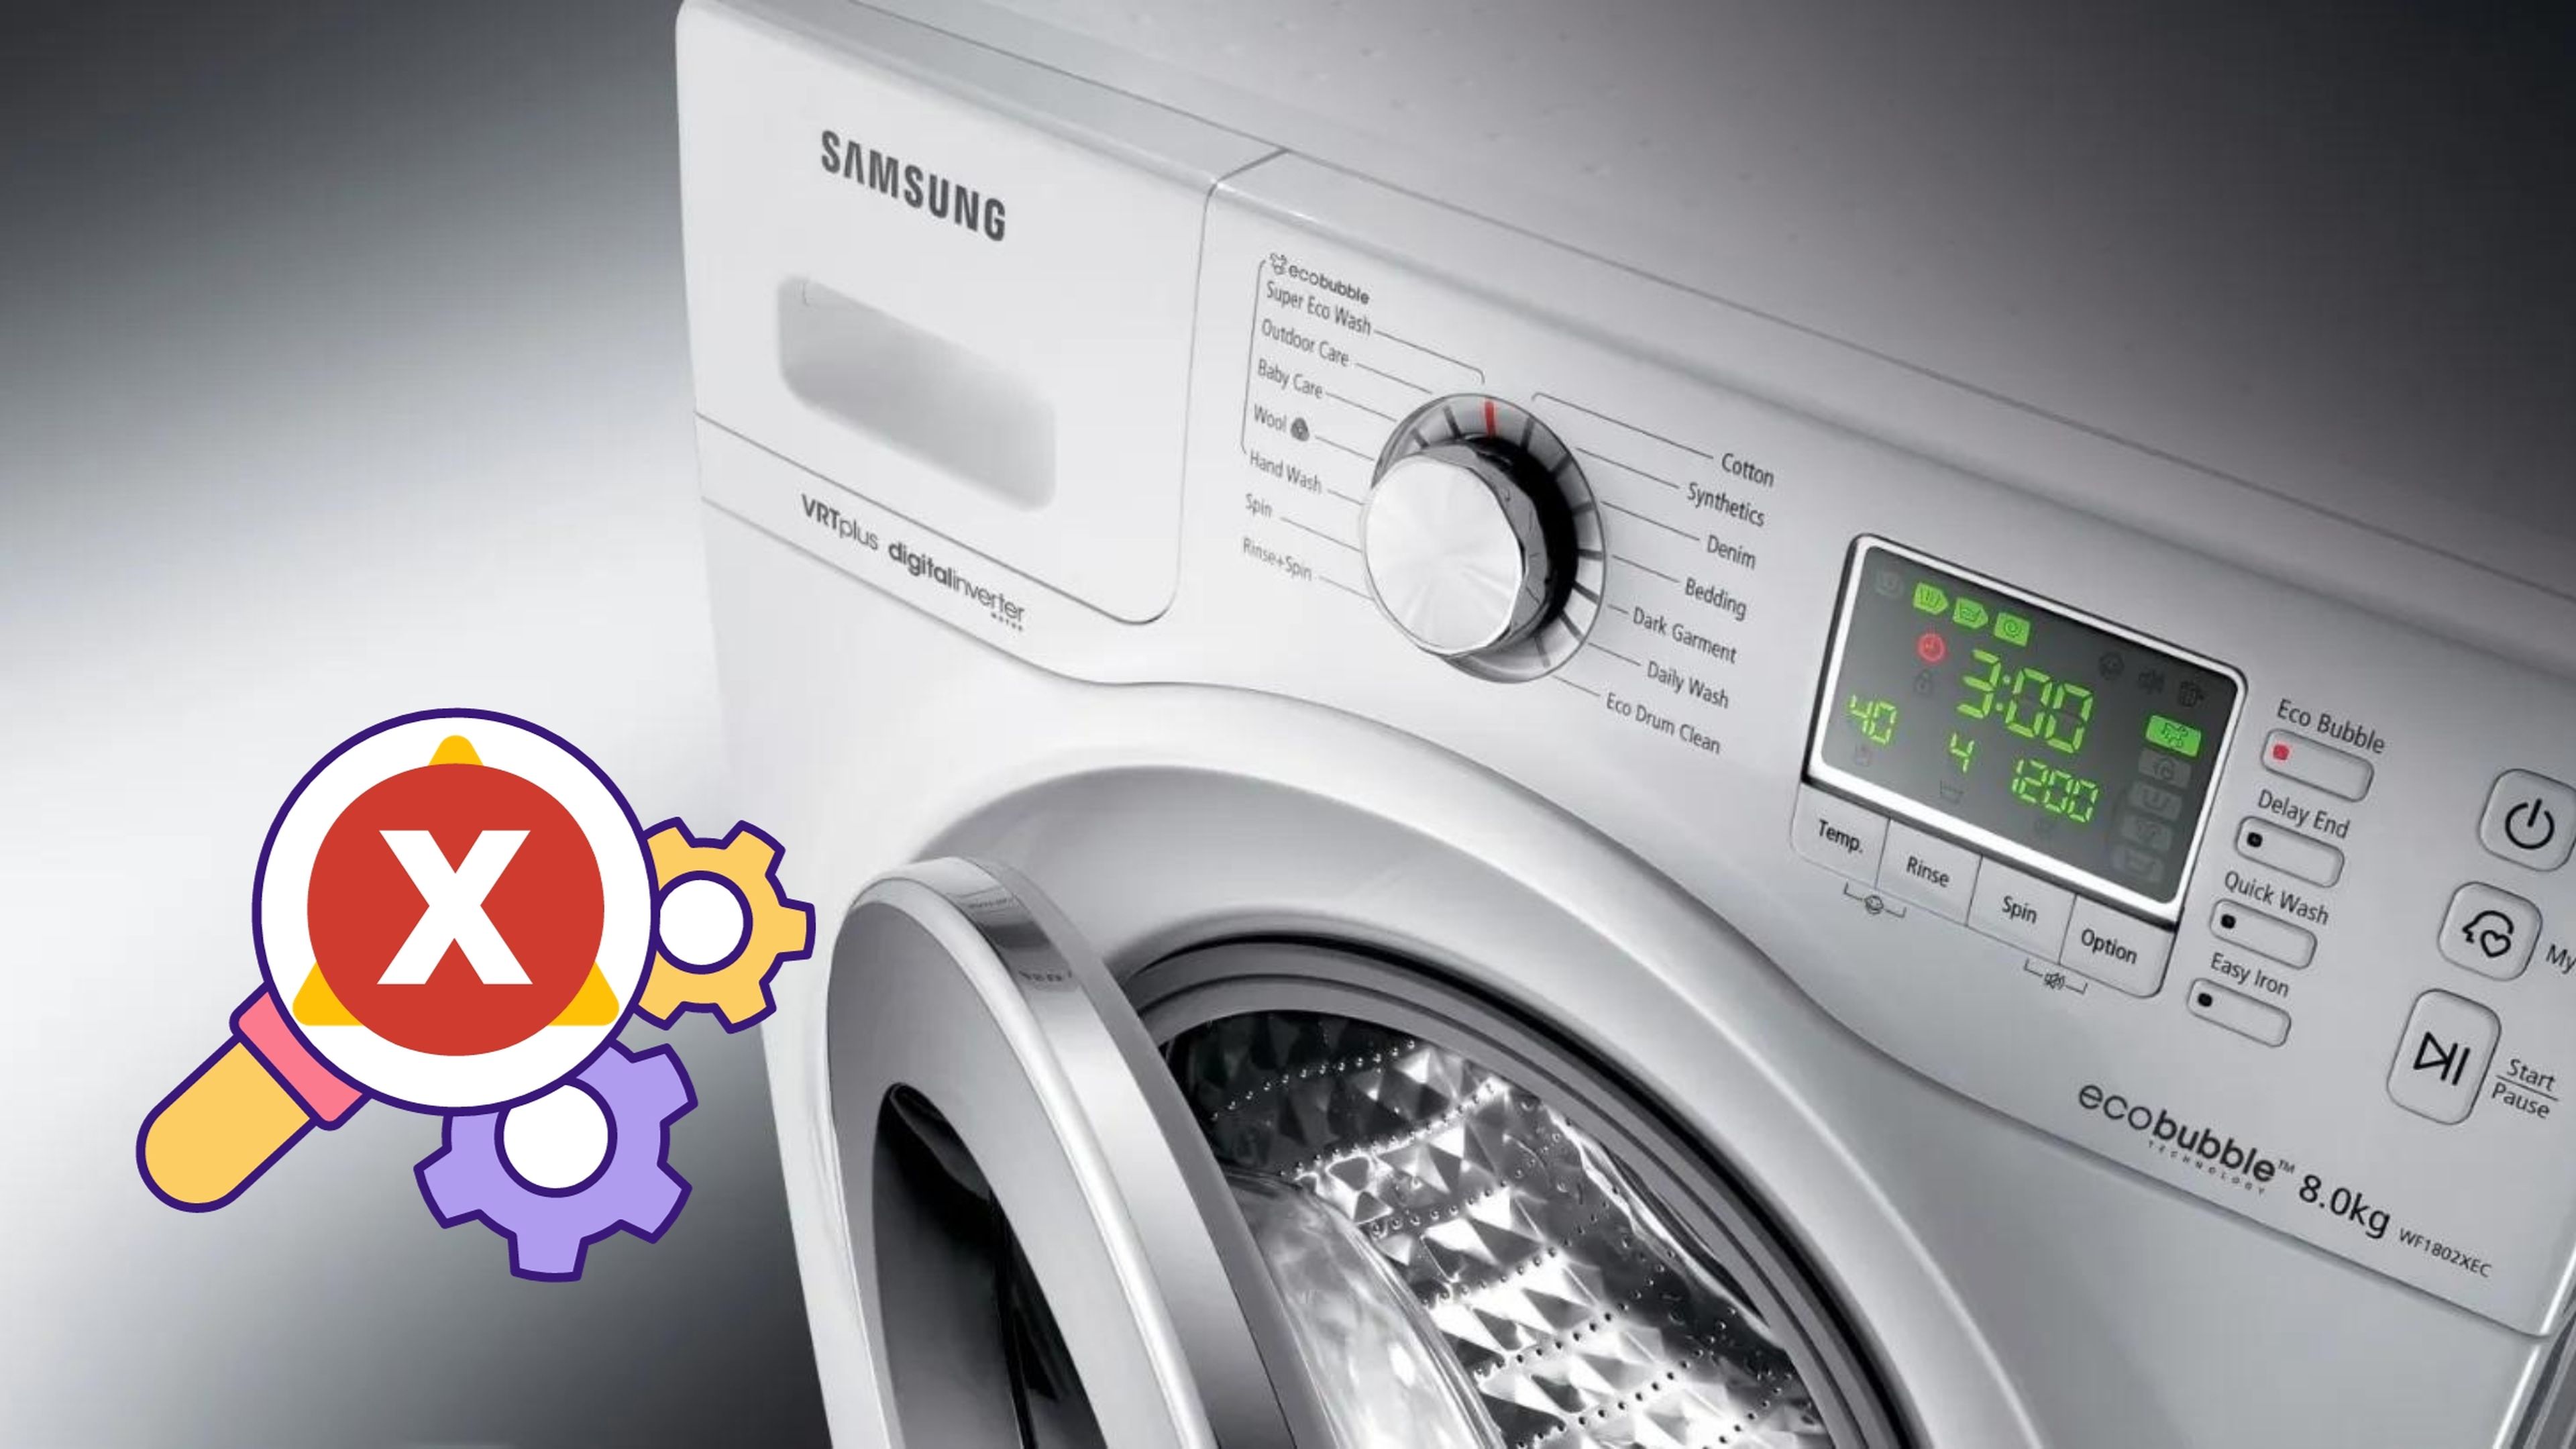 CÃ³digos de error en lavadoras Samsung: soluciones y problemas comunes